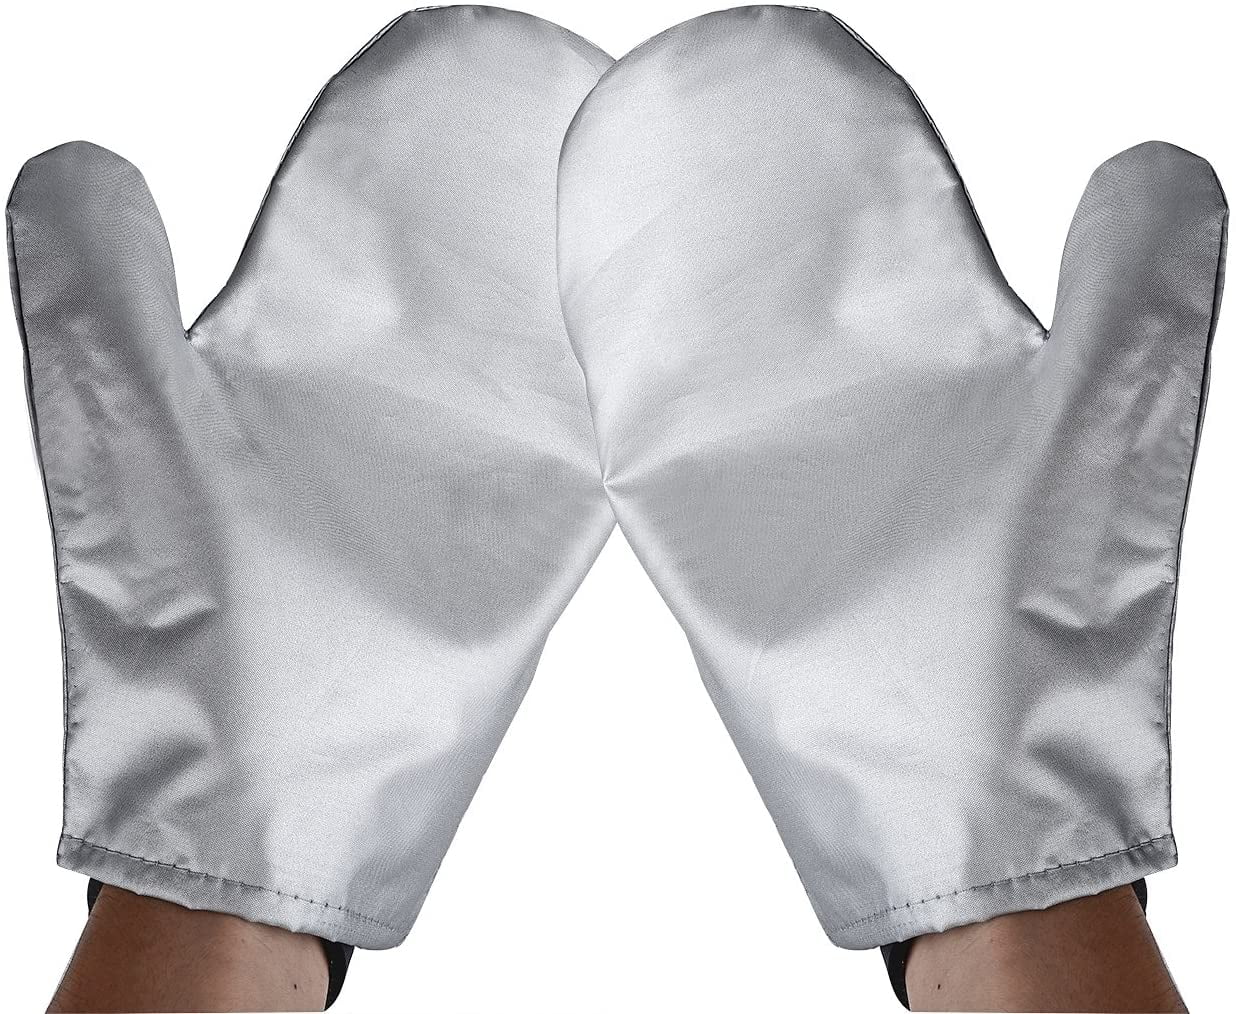 Lyanther Garment Steamer Ironing Gloves Mitt Anti Steam Gloves Durable Heat Resistant Waterproof Protective Ironing Glove for Garment Steamer Silver-1 Pair